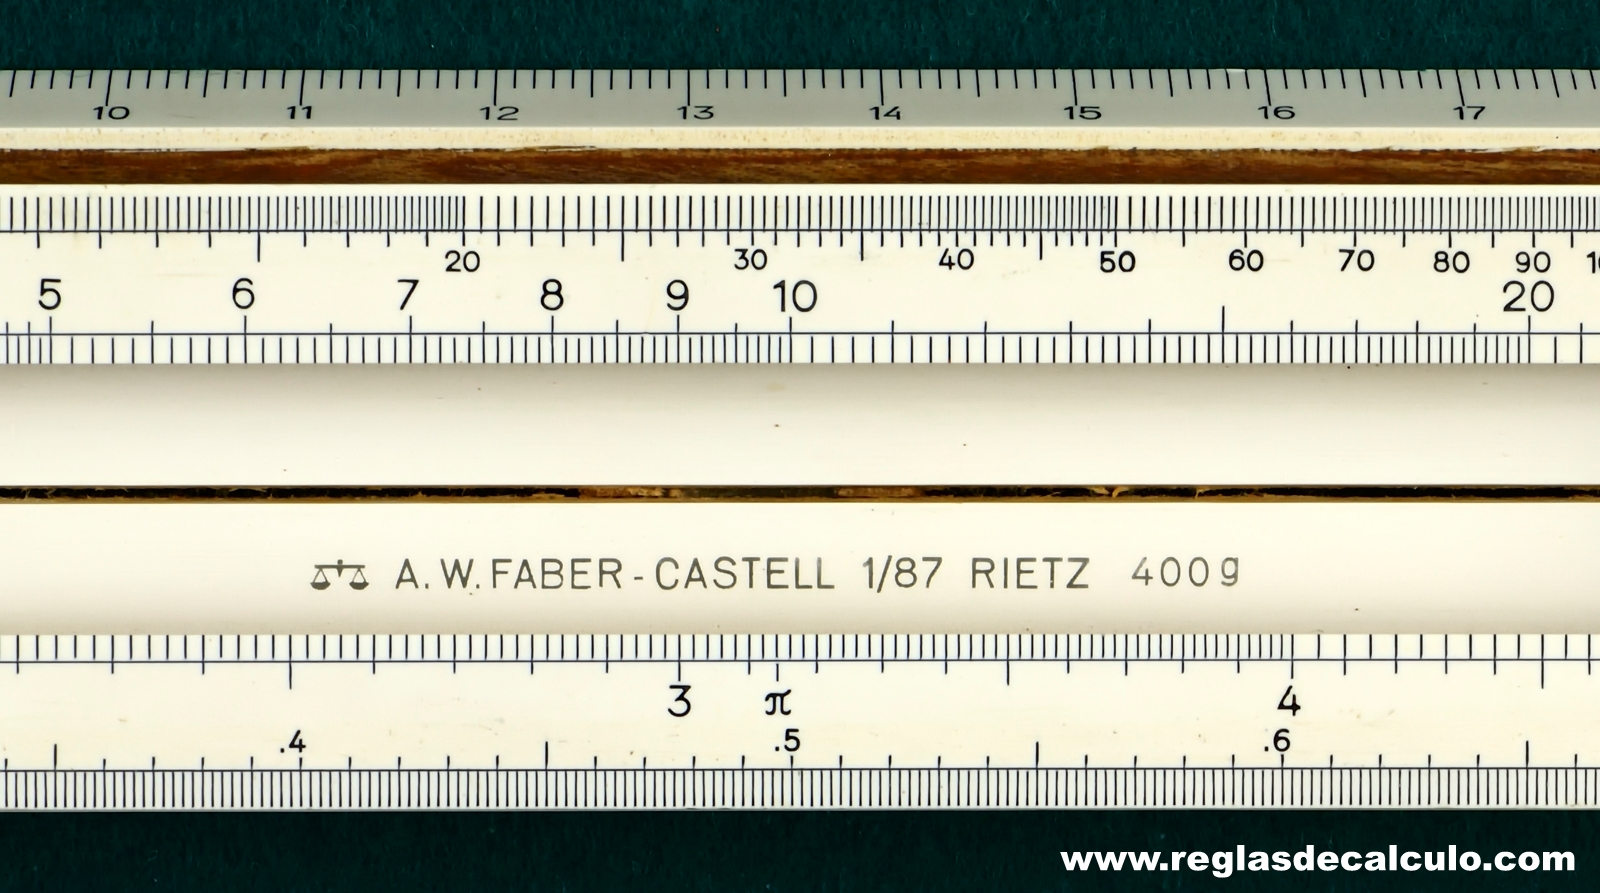 Faber Castell 1/87/400g Rietz